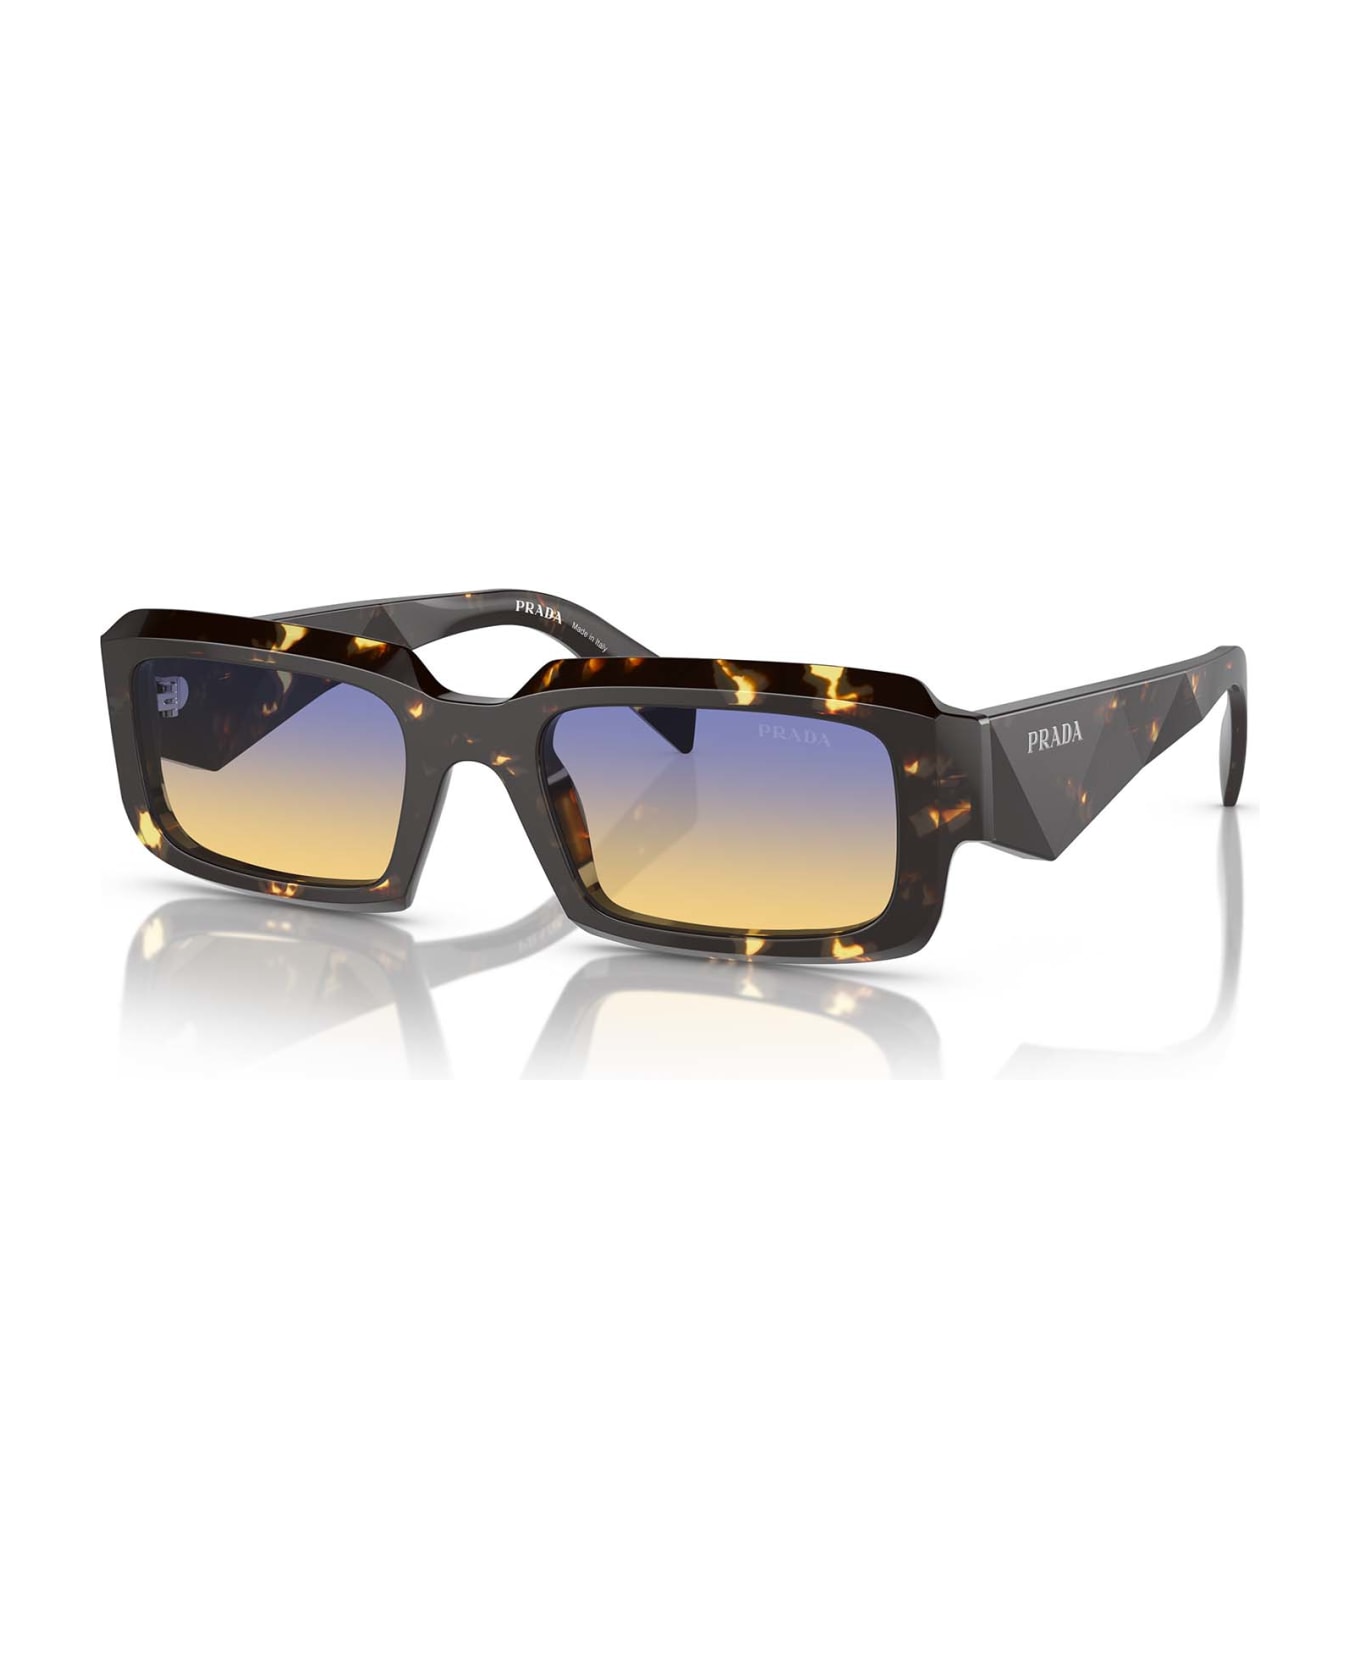 Prada Eyewear Pr 27zs Black Malt Tortoise Sunglasses - Black Malt Tortoise